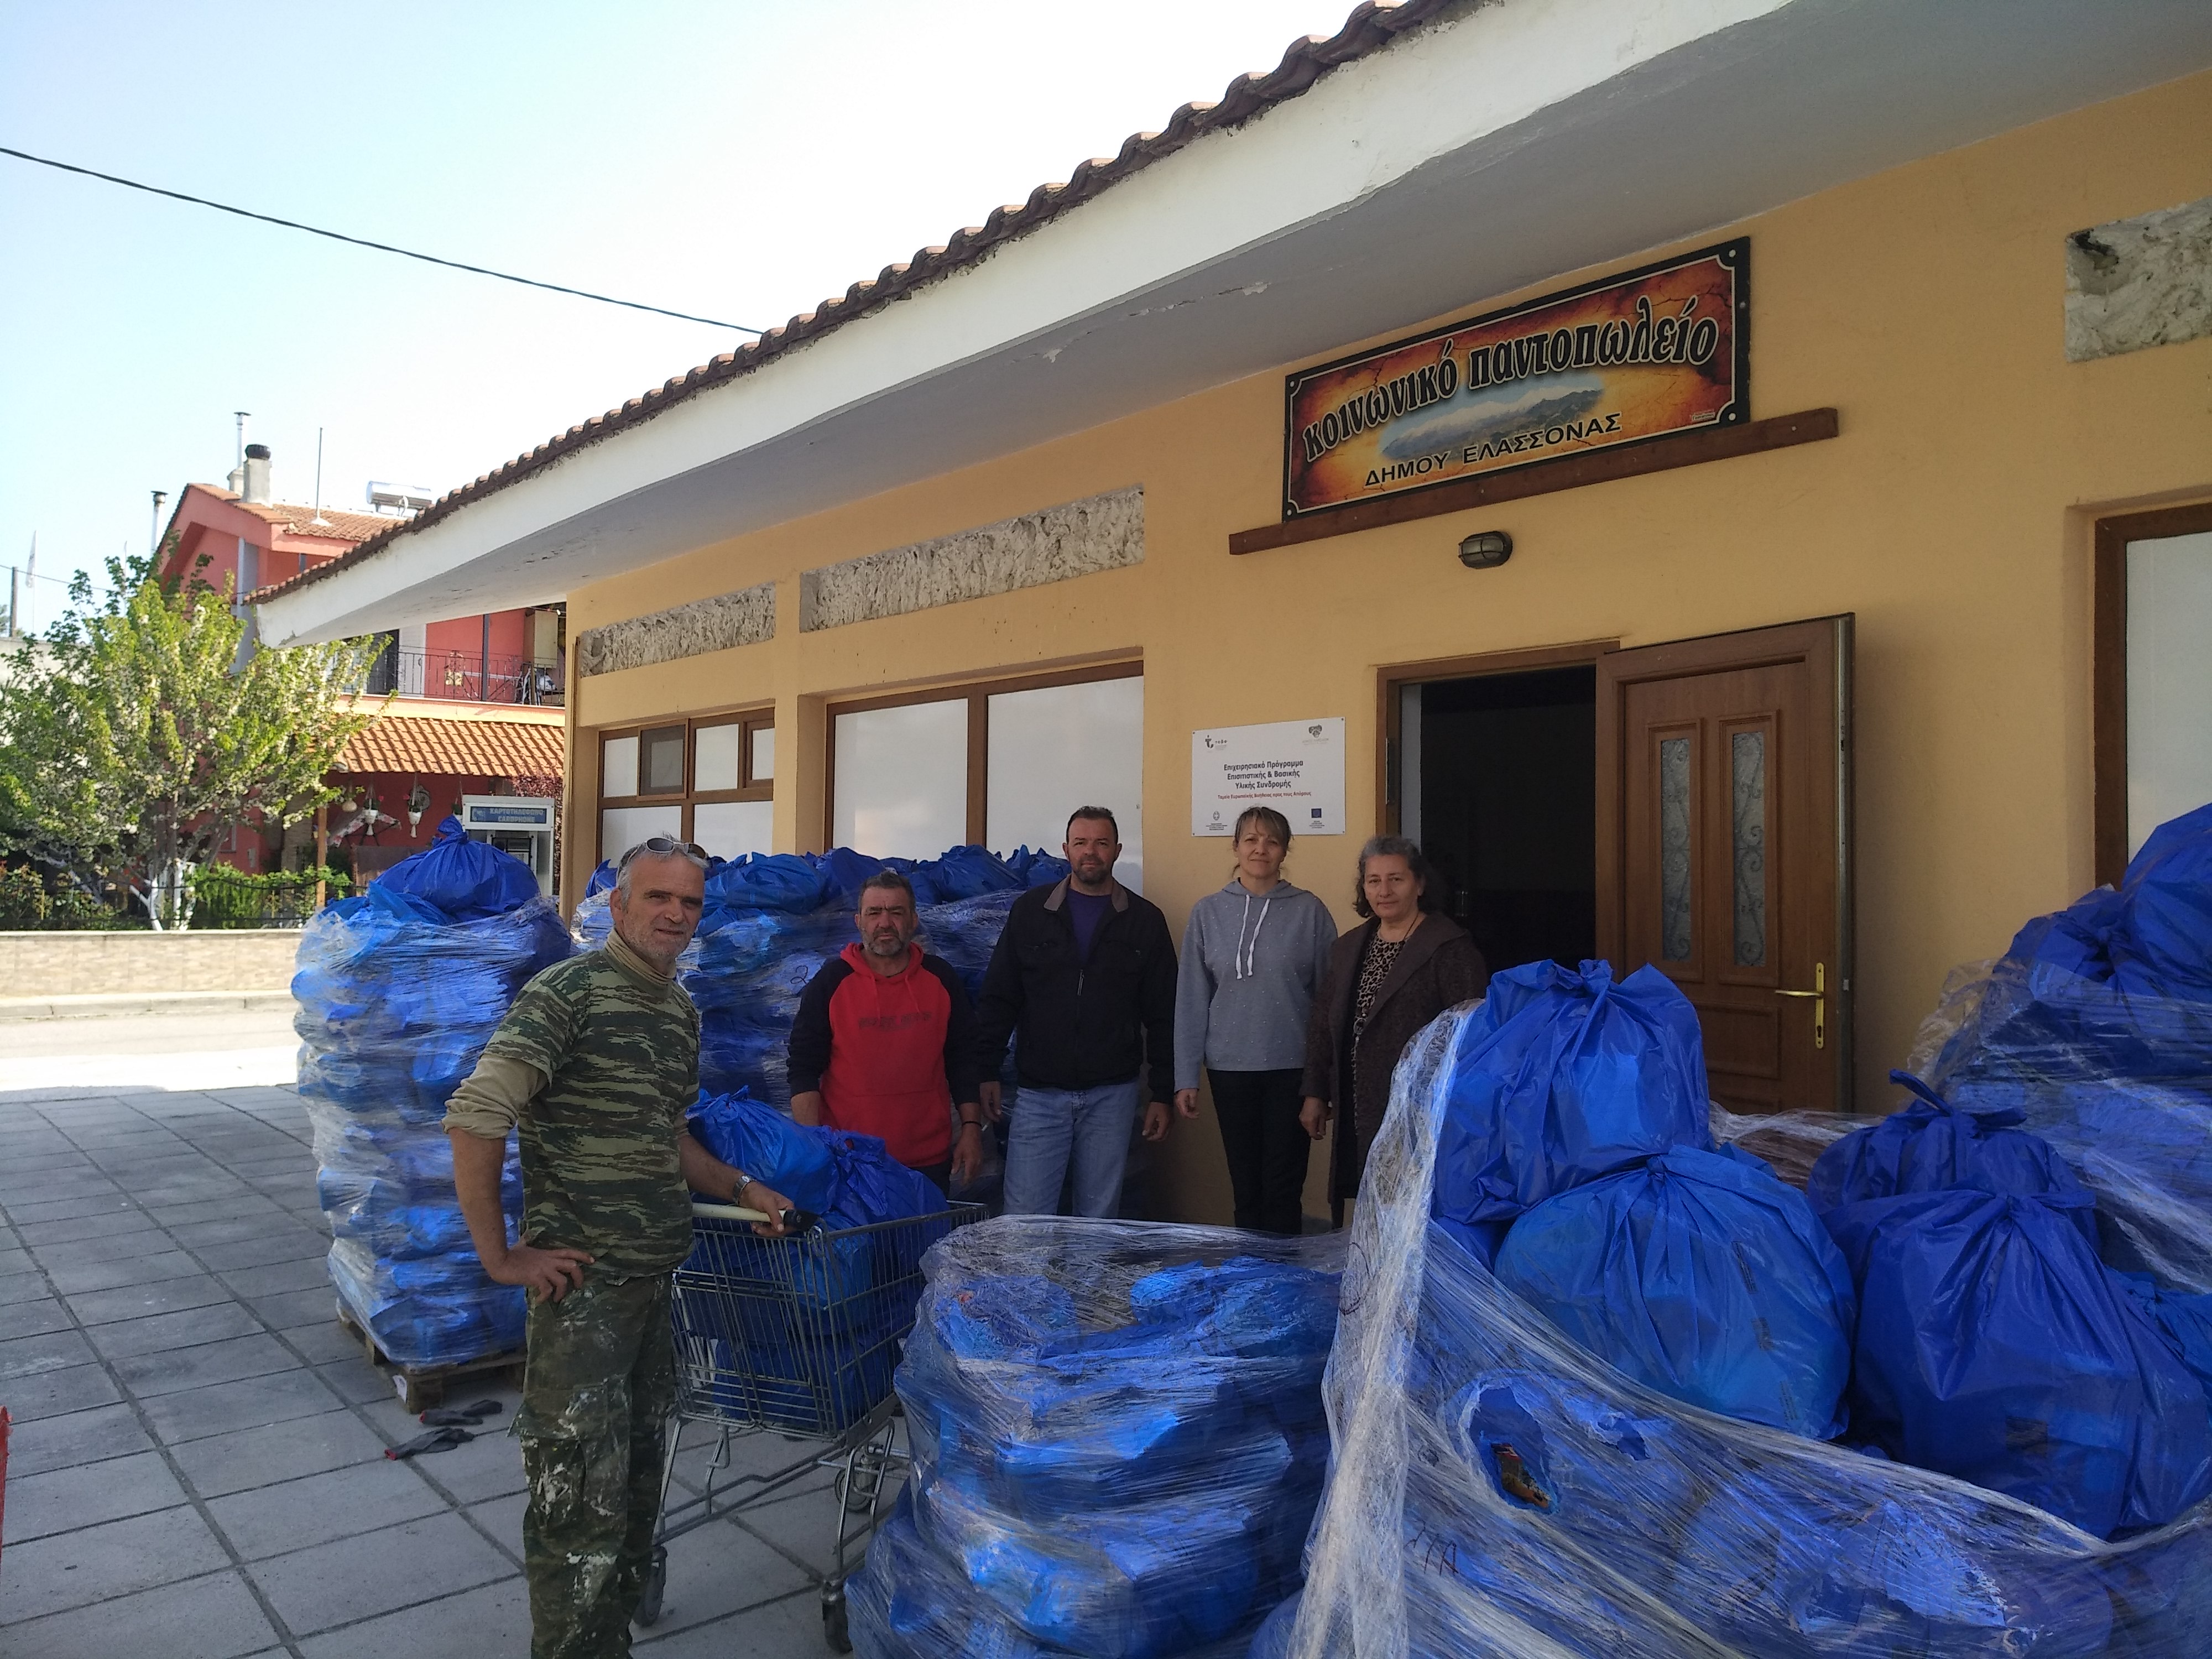 Δήμος Ελασσόνας: "Σε 383 οικογένειες η βοήθεια του ΤΕΒΑ"